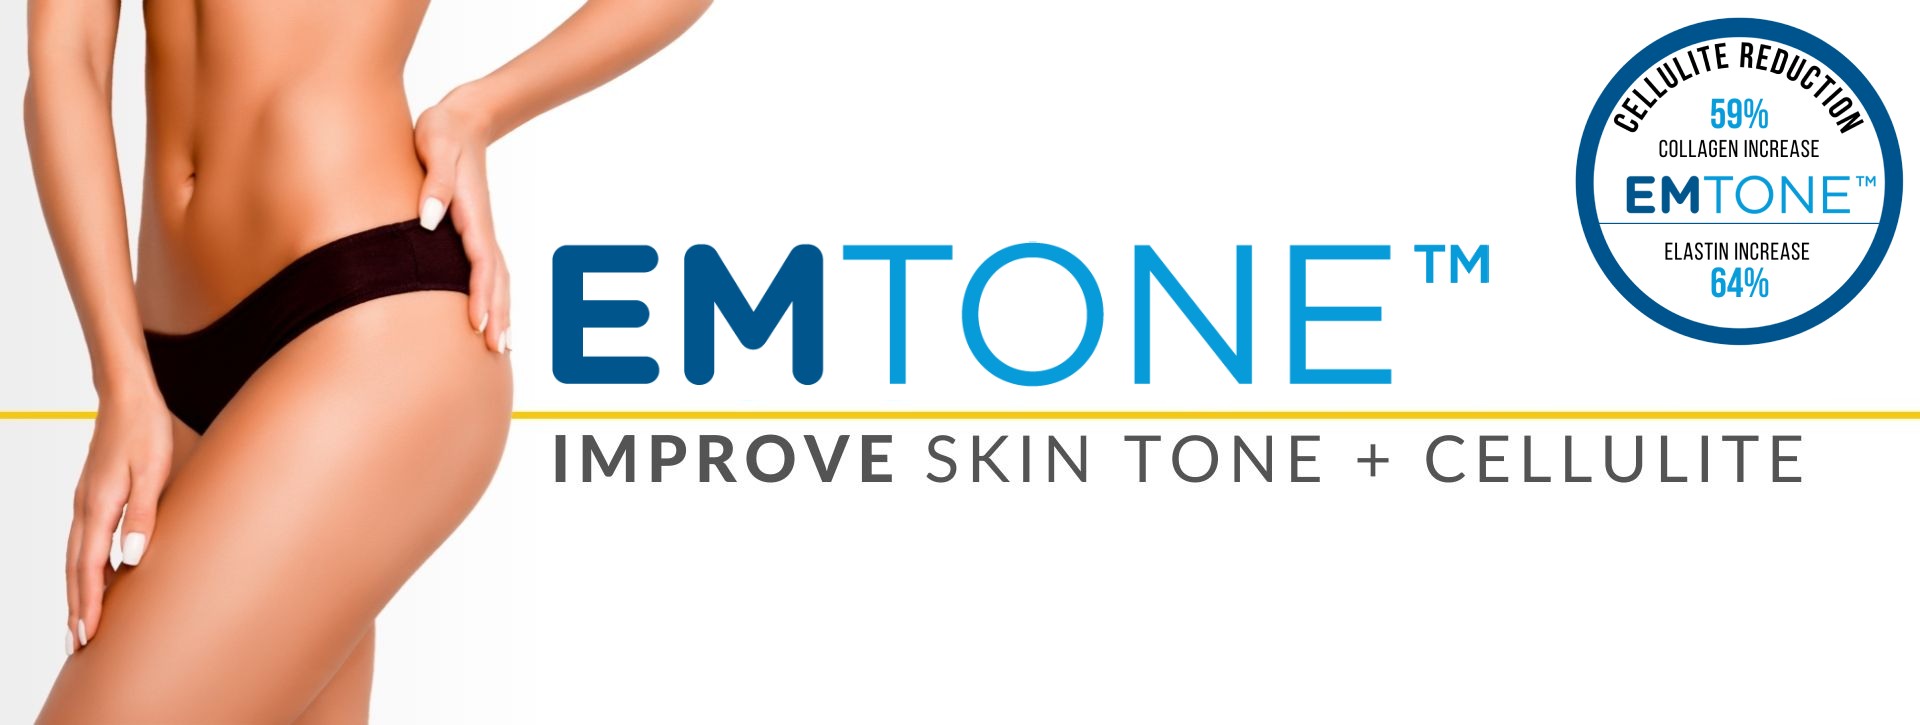 Emtone Improve skin tone